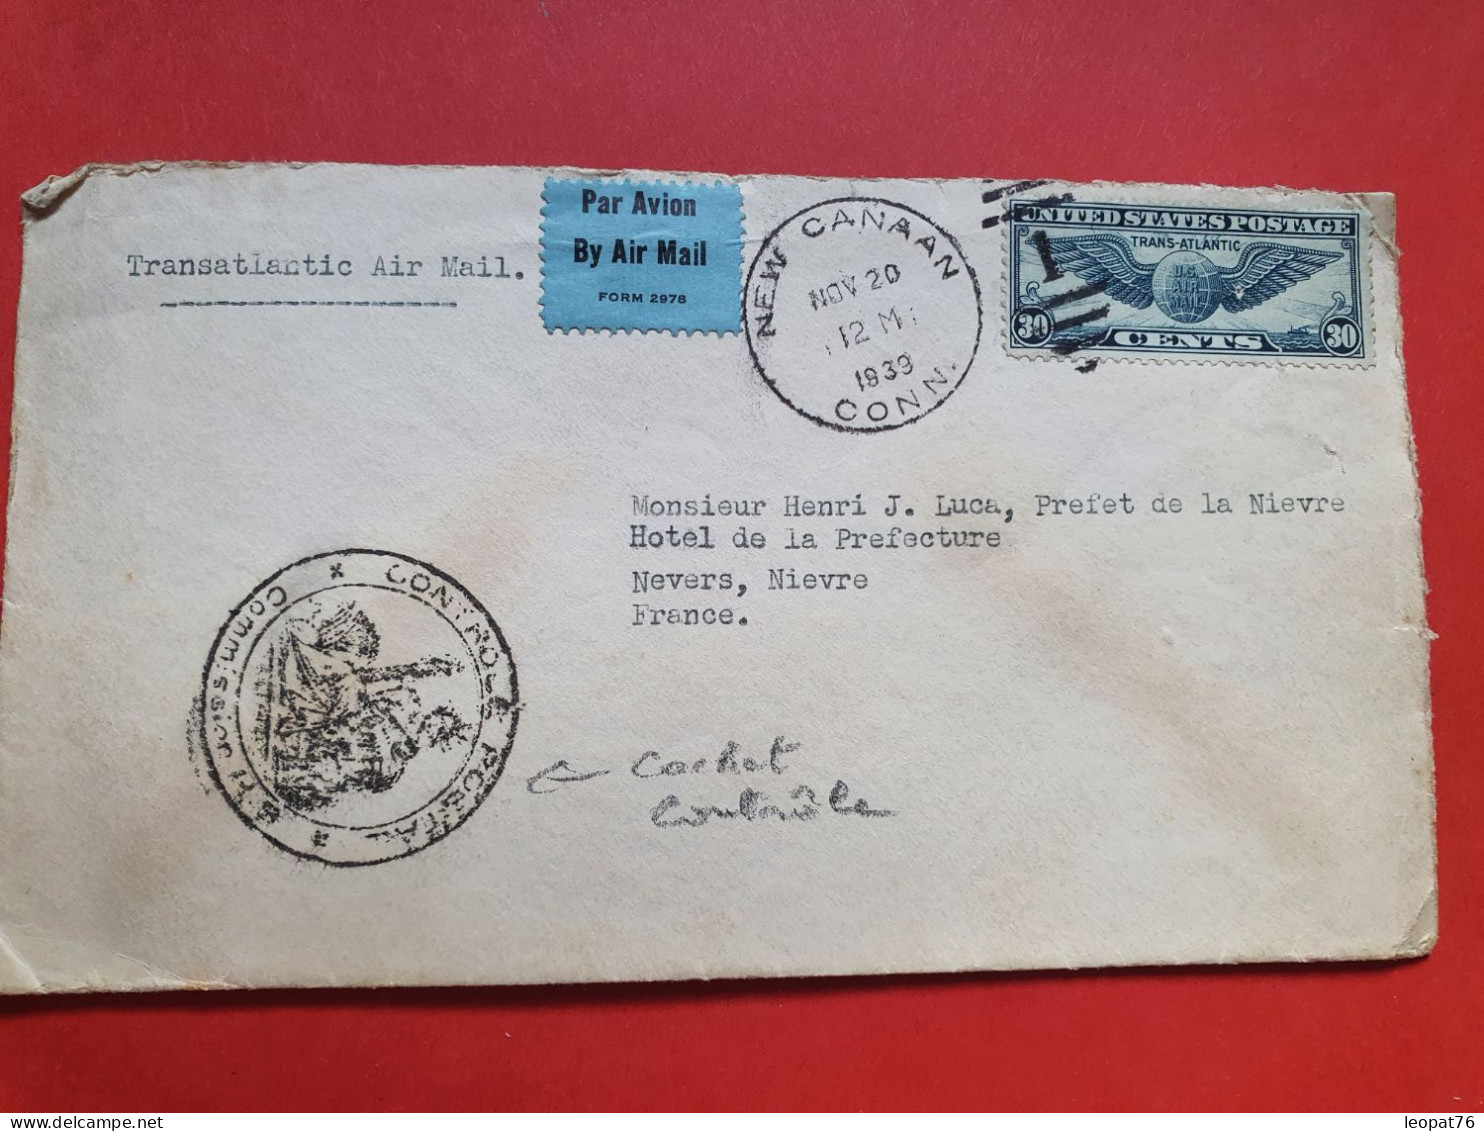 Etats Unis - Enveloppe De New Canaan Pour Un Préfet En France En 1939 Avec Cachet De Contrôle Postal - JJ 71 - Briefe U. Dokumente